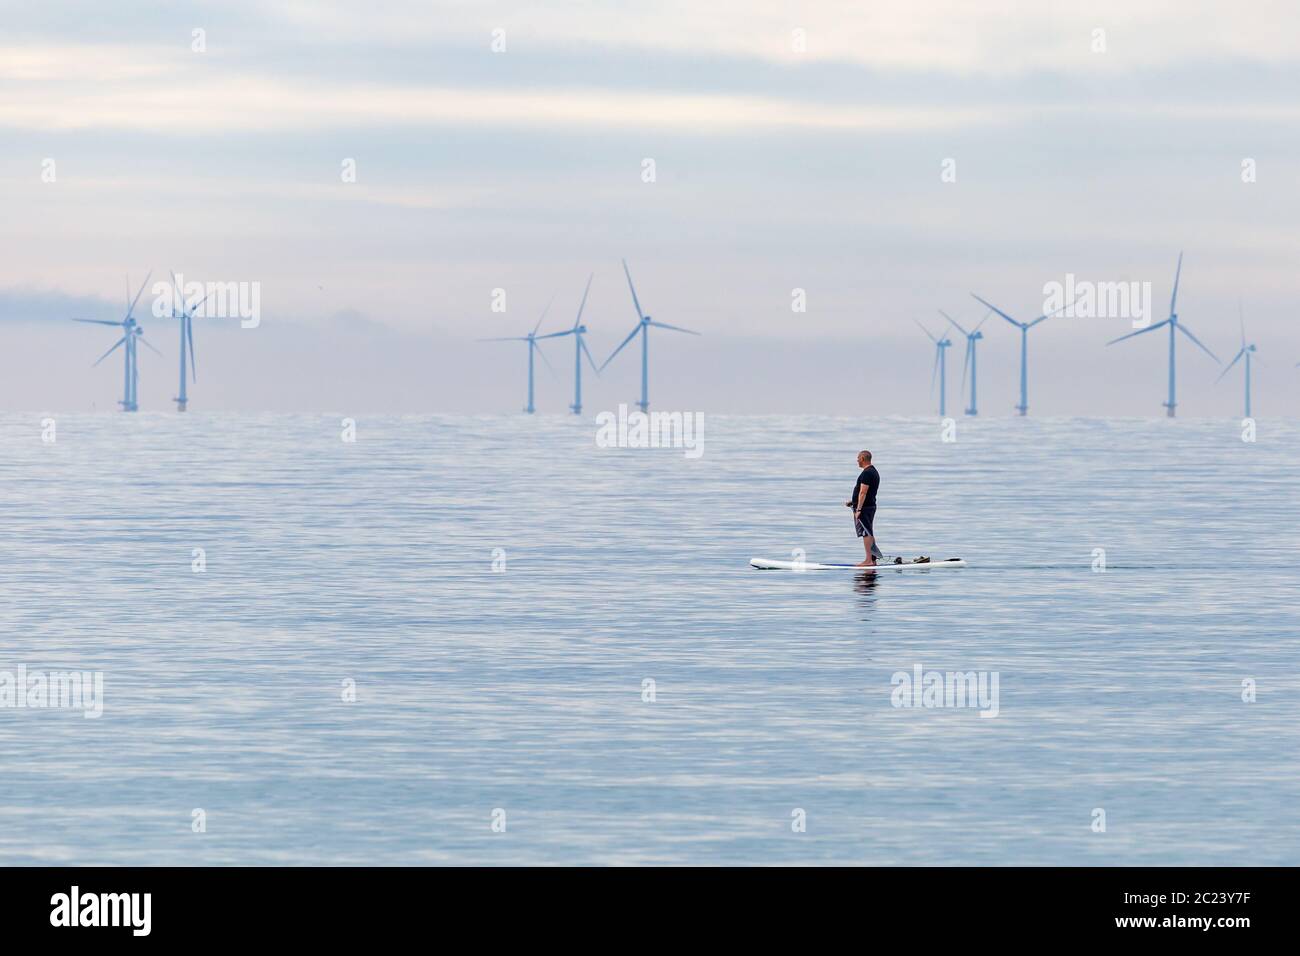 Worthing, Sussex, Royaume-Uni ; 15 juin 2020 ; Homme à Paddleboard glissant à travers une mer calme. Il y a une lumière douce du matin. Un certain nombre d'éoliennes sont Banque D'Images